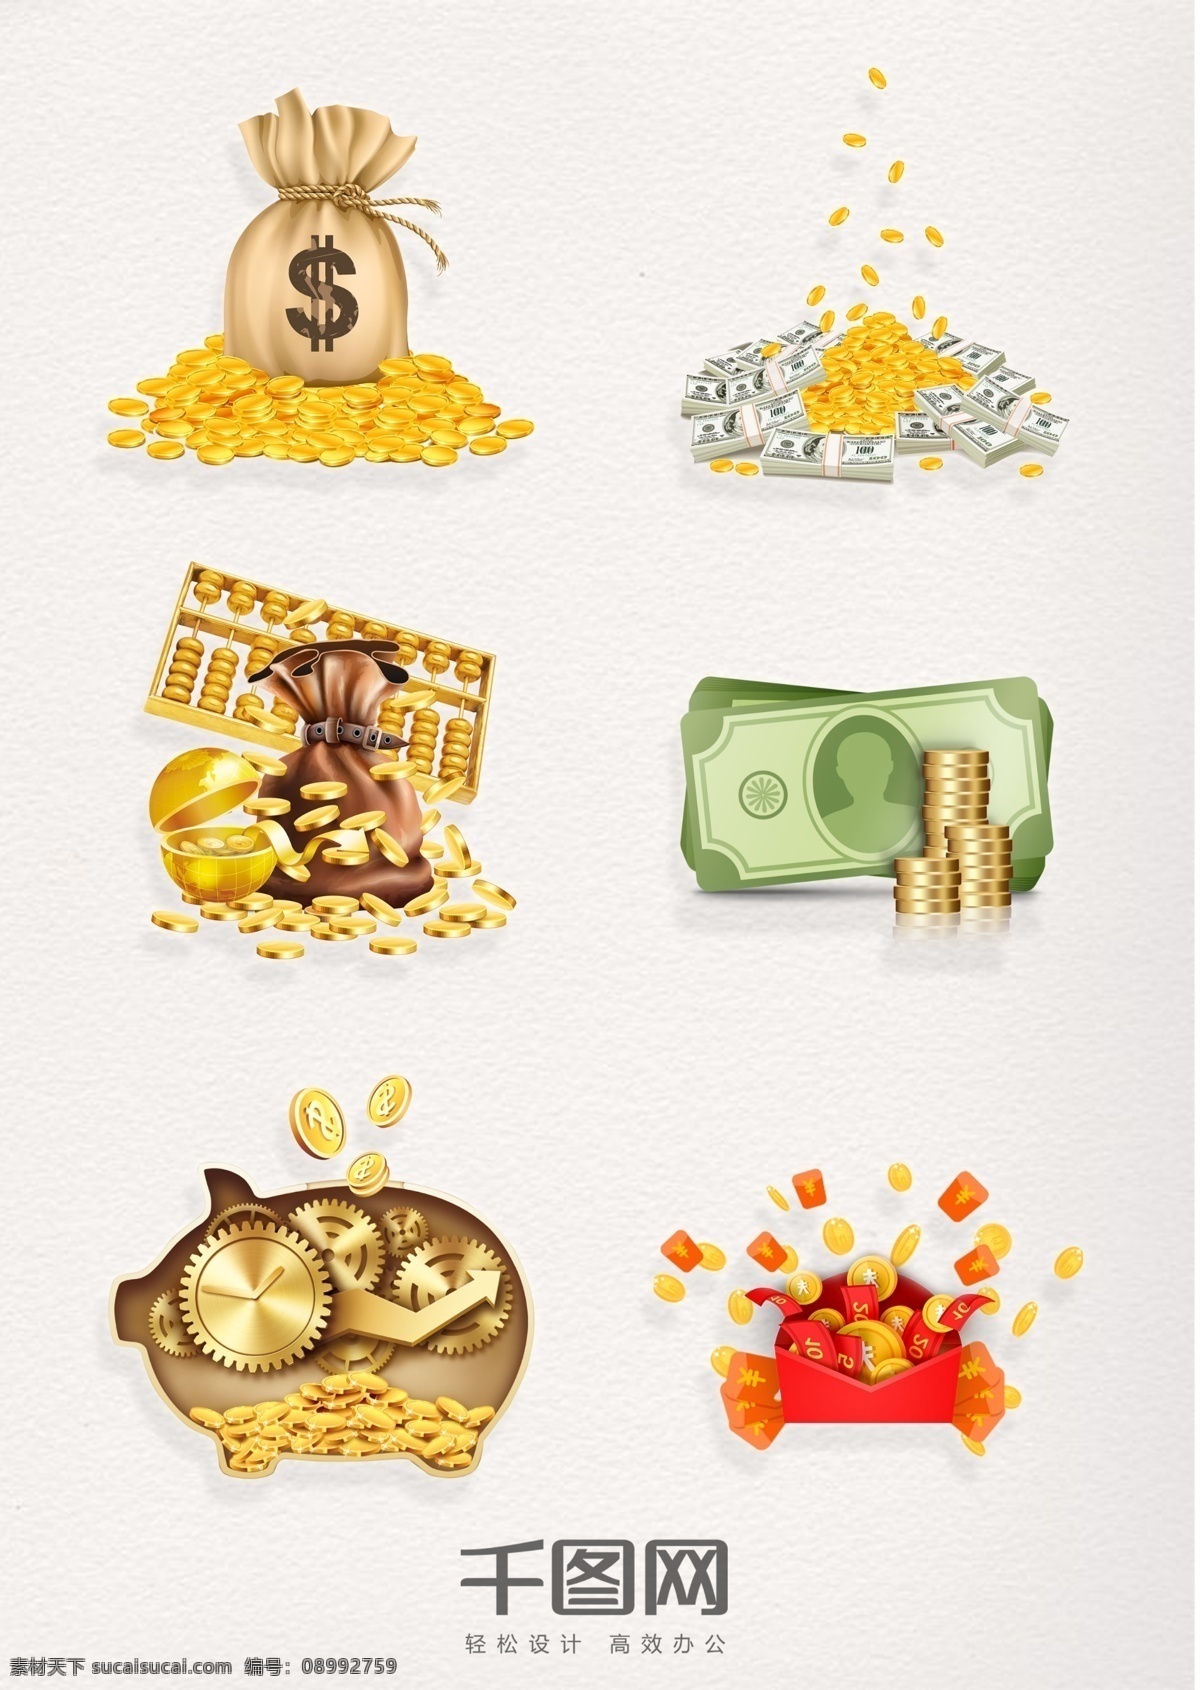 堆 金币 彩色 元素 图案 一堆金币 金币元素 金币存钱罐 金币红包 金币装饰图案 金币图案 金币与纸币 大量金币